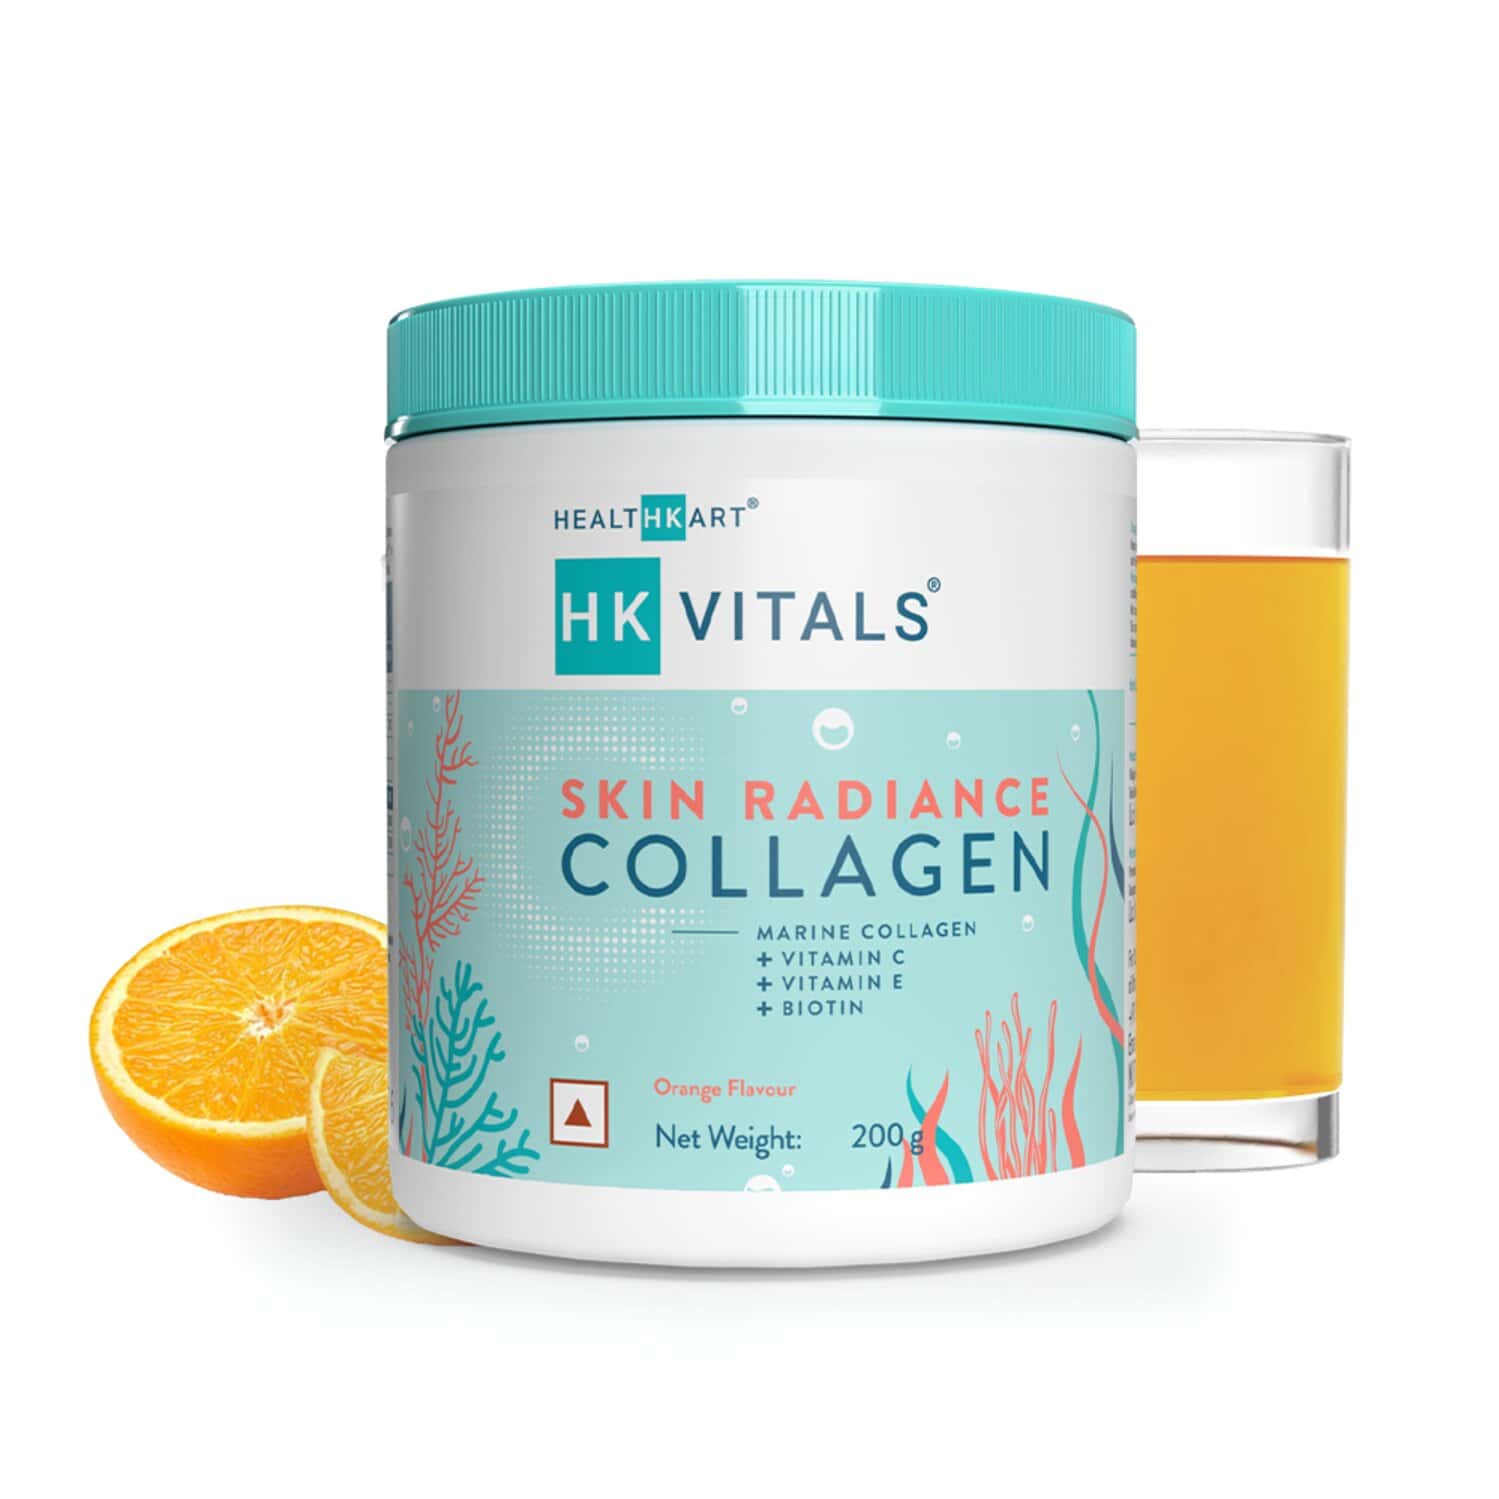 Healthkart Hk Vitals Skin Radiance Collagen Powder, Marine Collagen With Biotin (Orange, 200g)